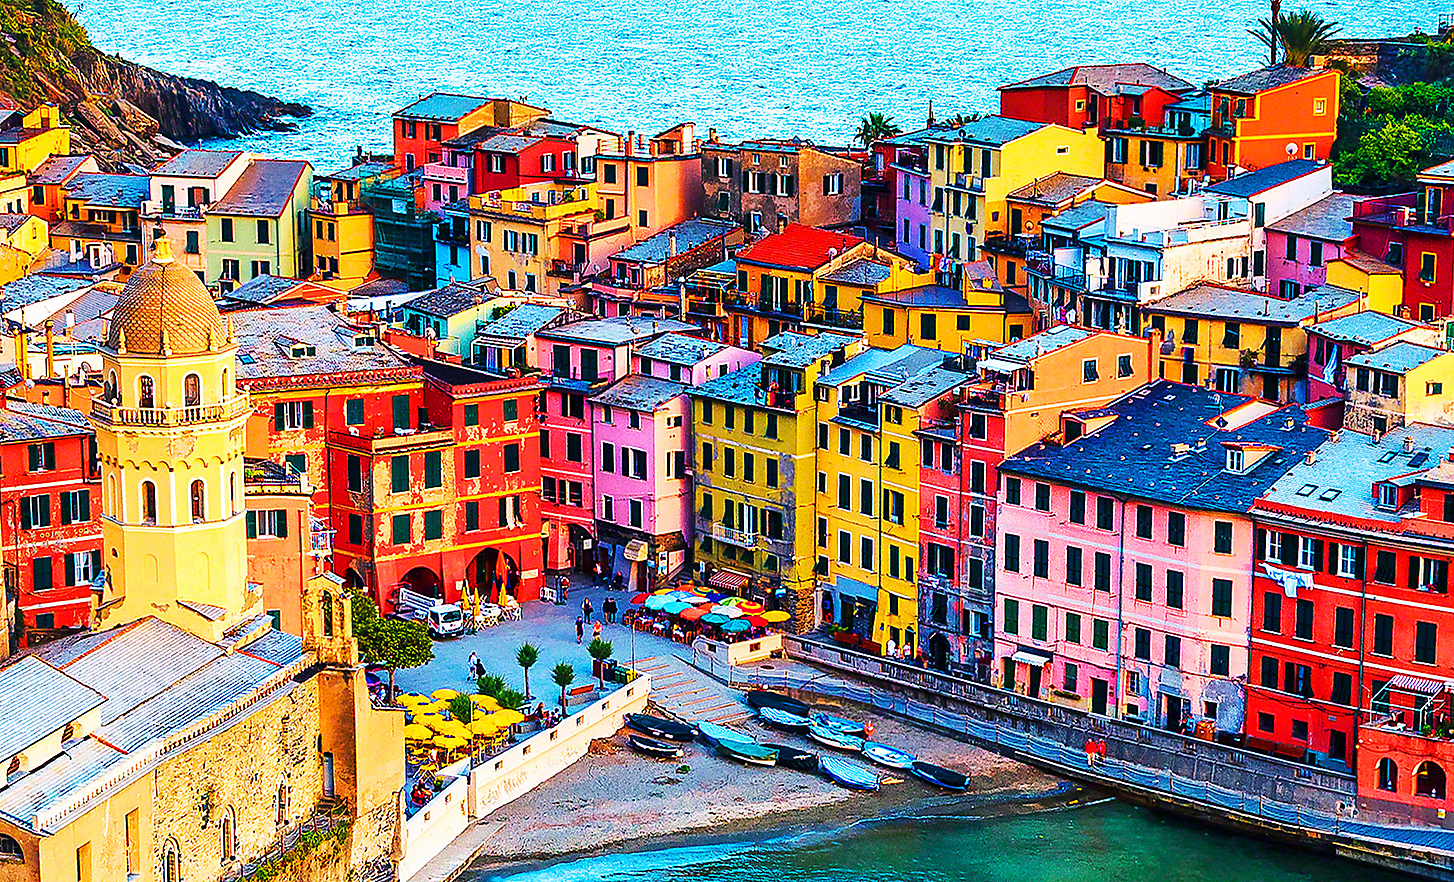 Image ensoleillée d'un petit village de bord de mer avec plusieurs bateaux de pêche, cafés et bâtiments aux couleurs vives